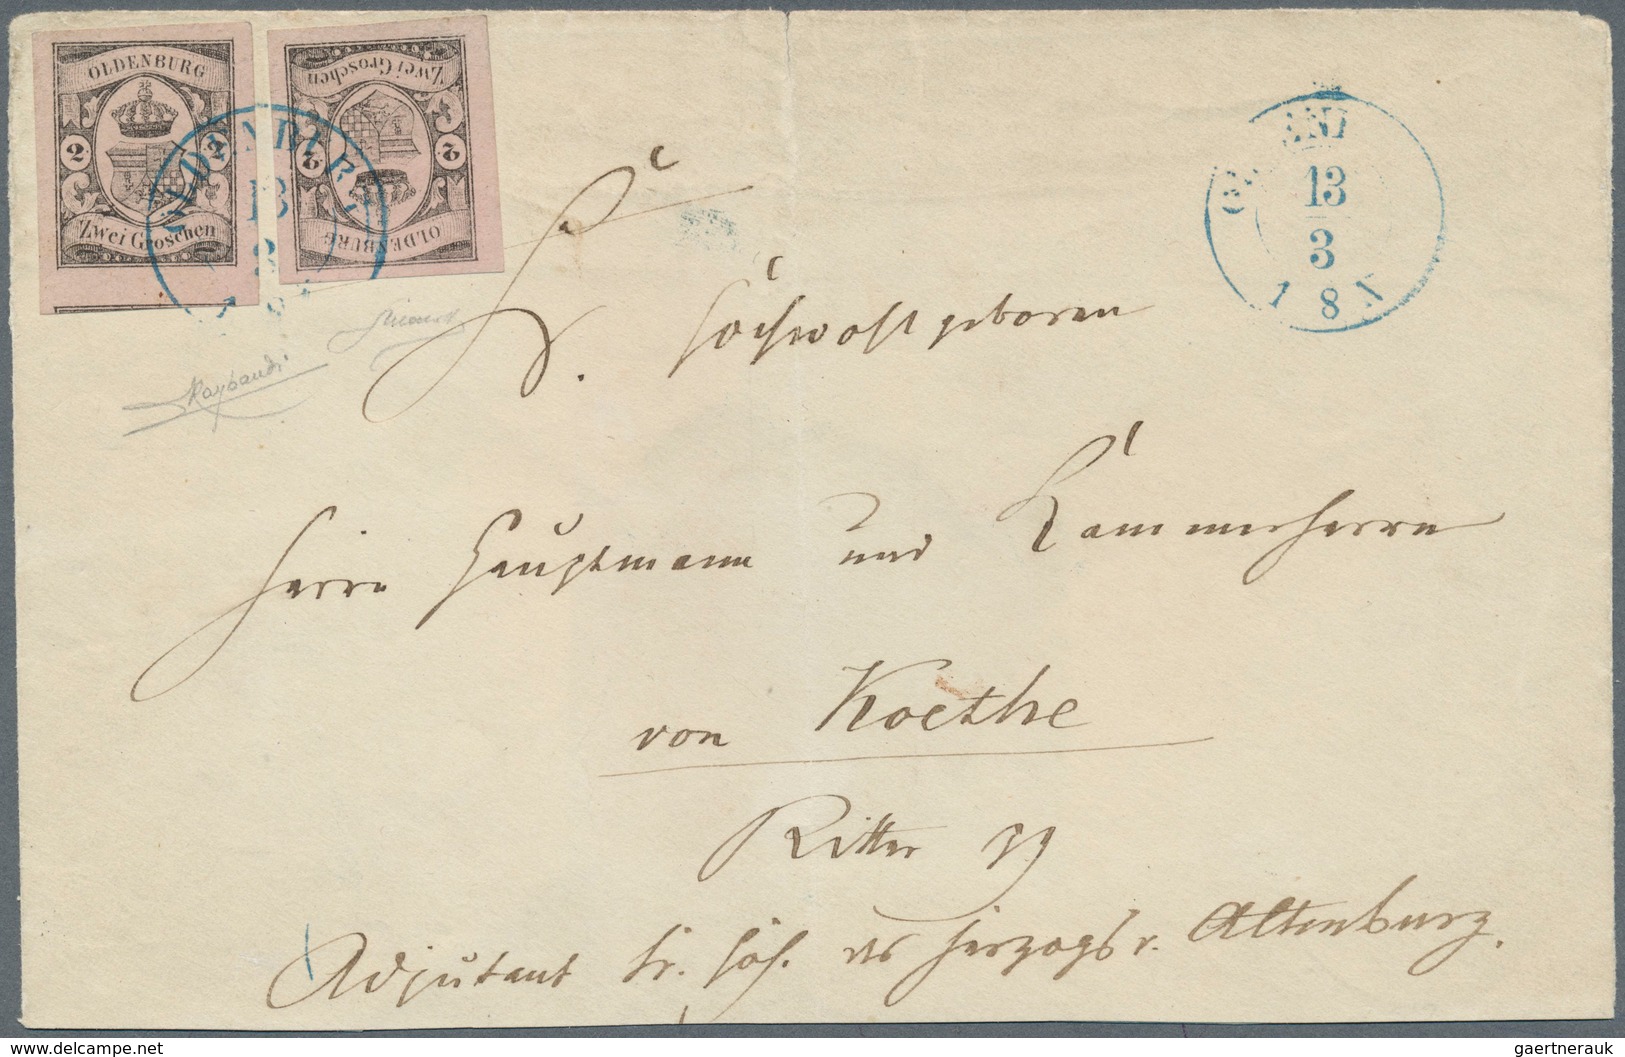 Oldenburg - Marken Und Briefe: 1859/61: 2 Gr. Schwarz Auf Rosa, Sehr Seltene Mehrfachfranktur Von Zw - Oldenbourg